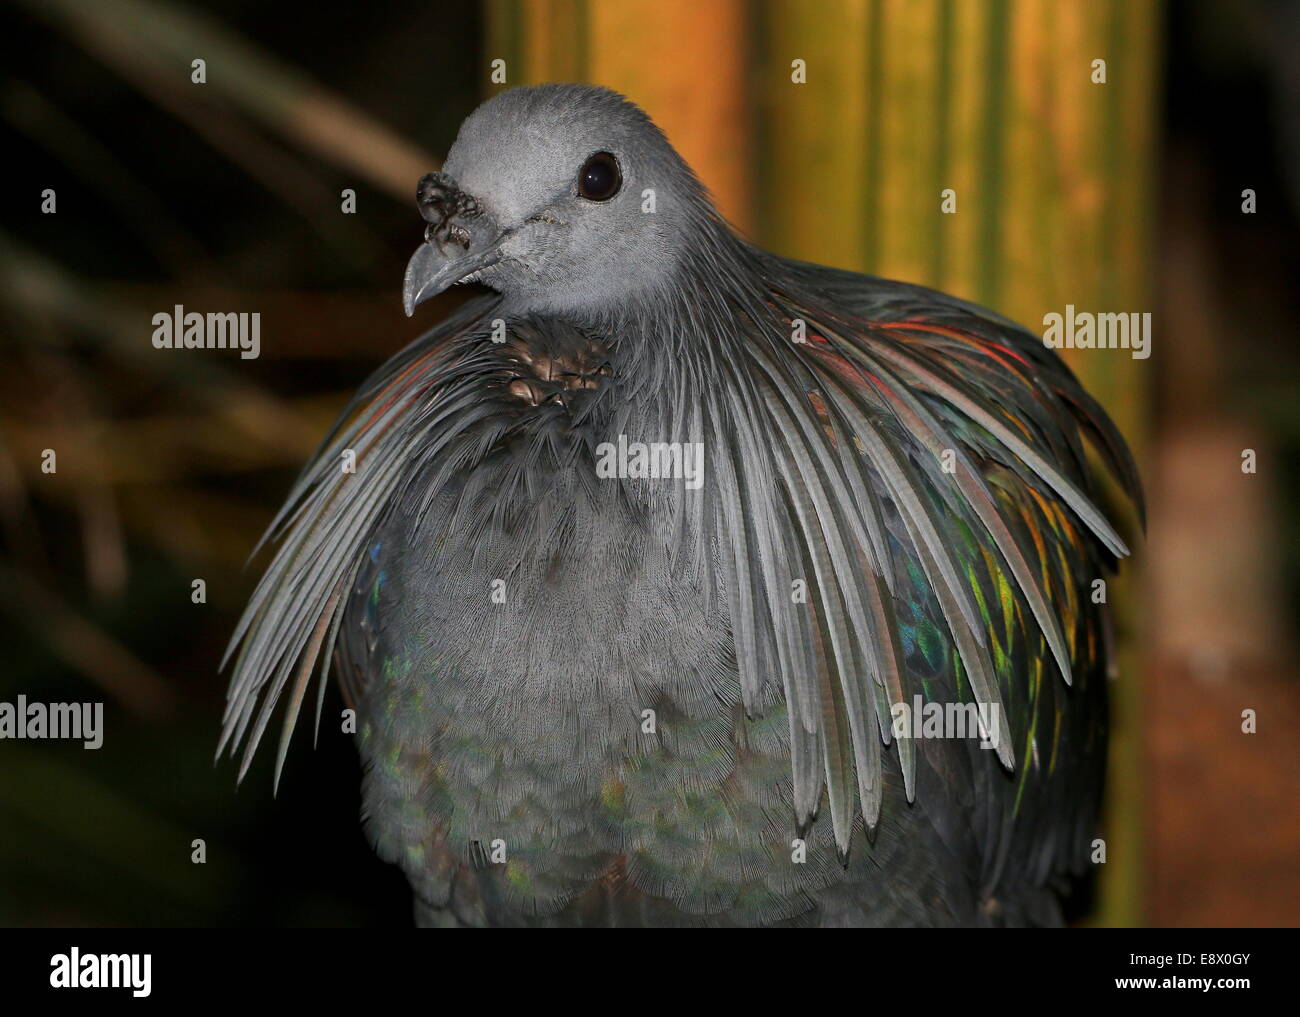 Nicobare piccione (Caloenas nicobarica) dettagliata di close-up di testa Foto Stock